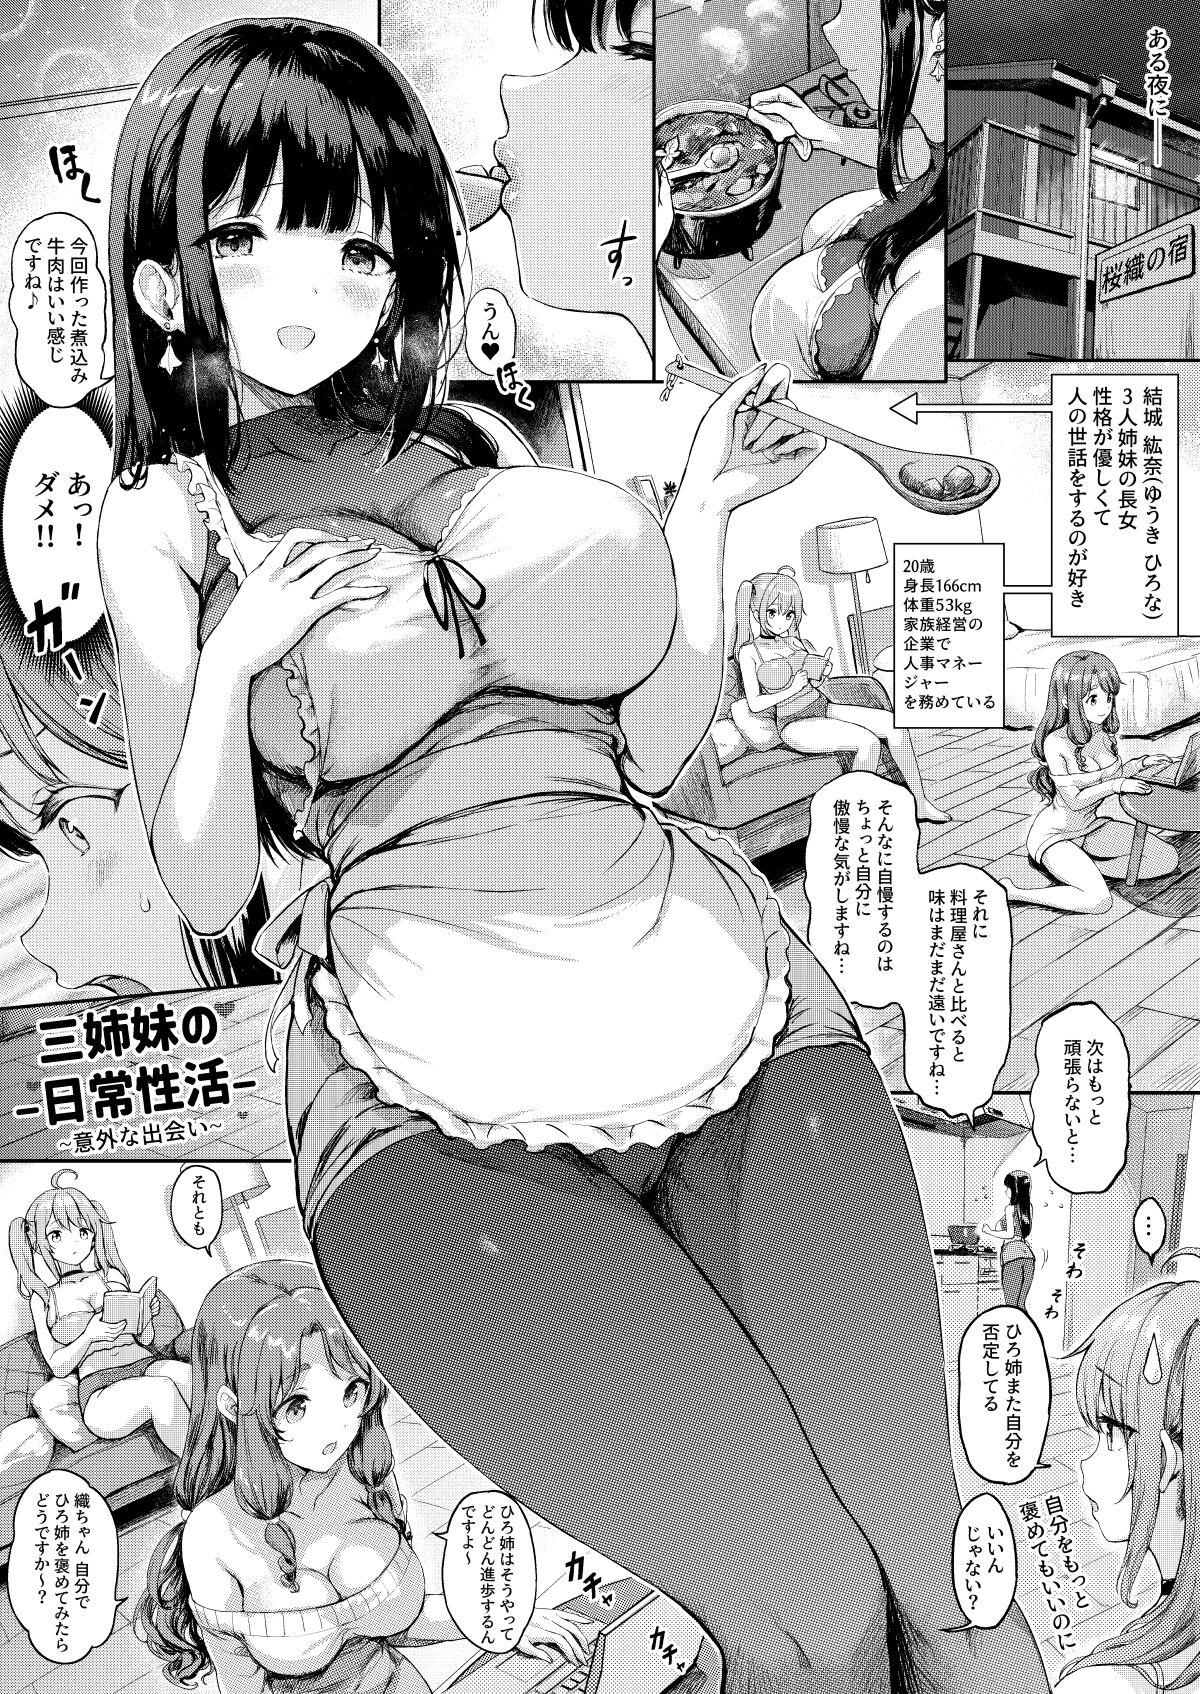 Bigbutt Sanshimai Manga ep1 - Original Cachonda - Picture 2